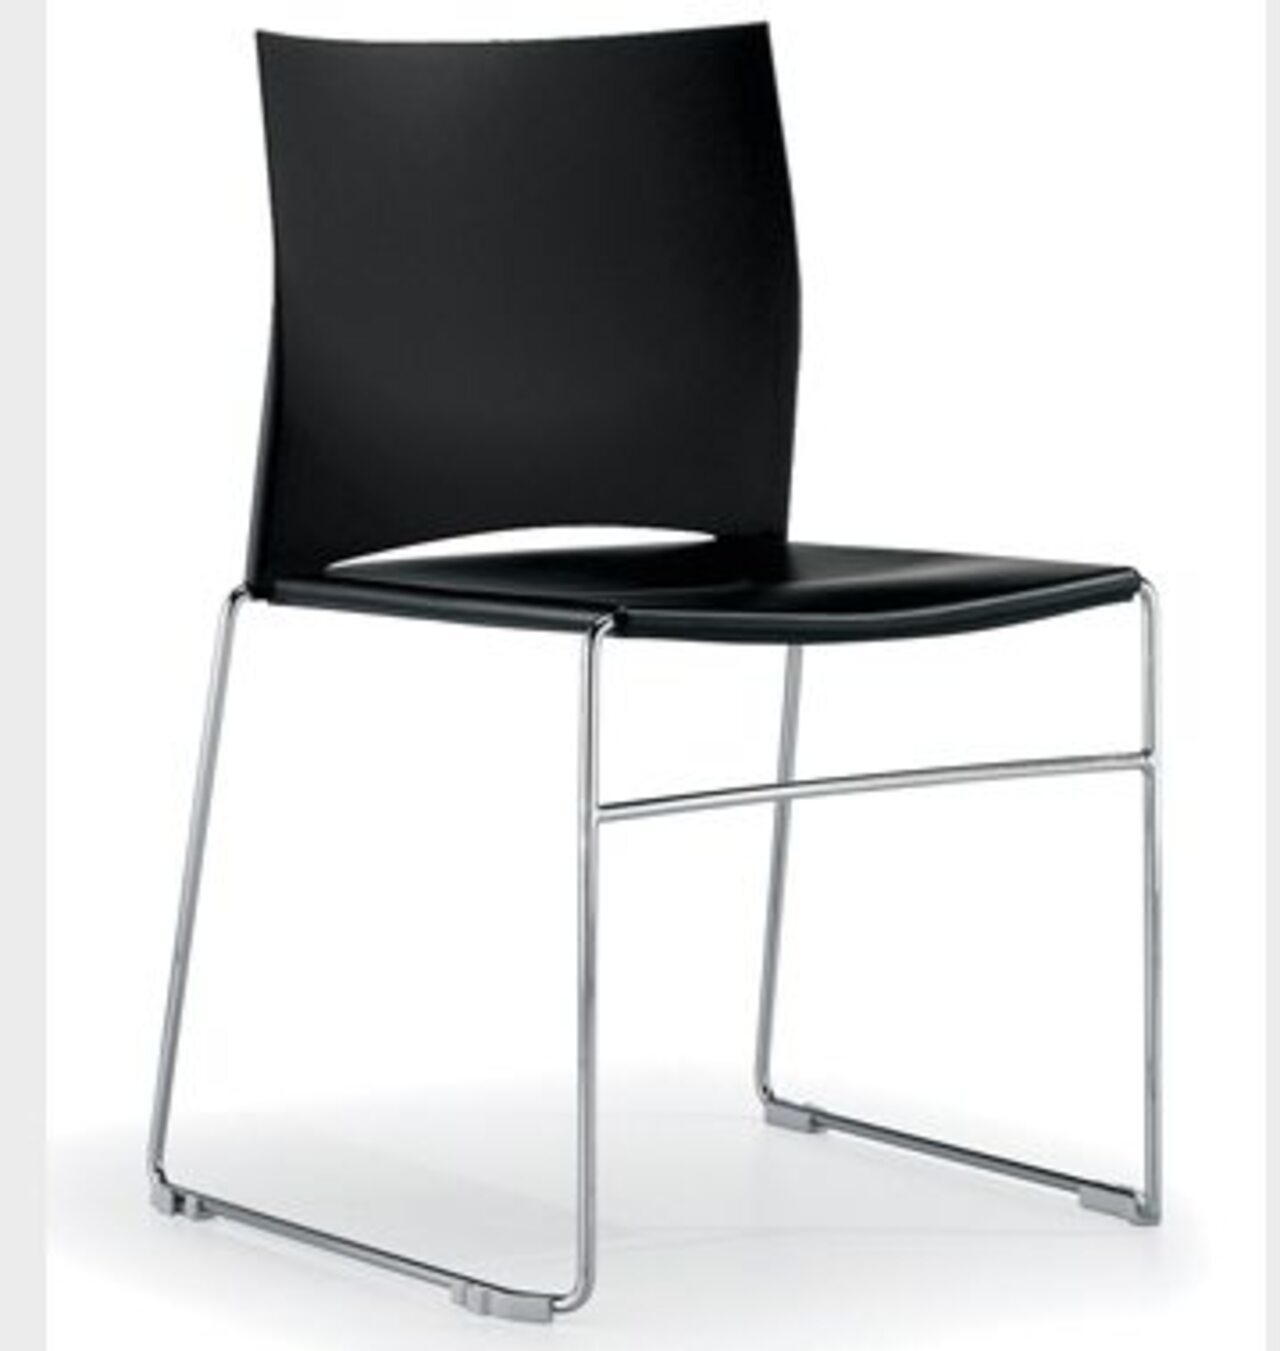 Офисный стул web 2 с пюпитром (хром) web2_Webbrr пластик White 480x525x480